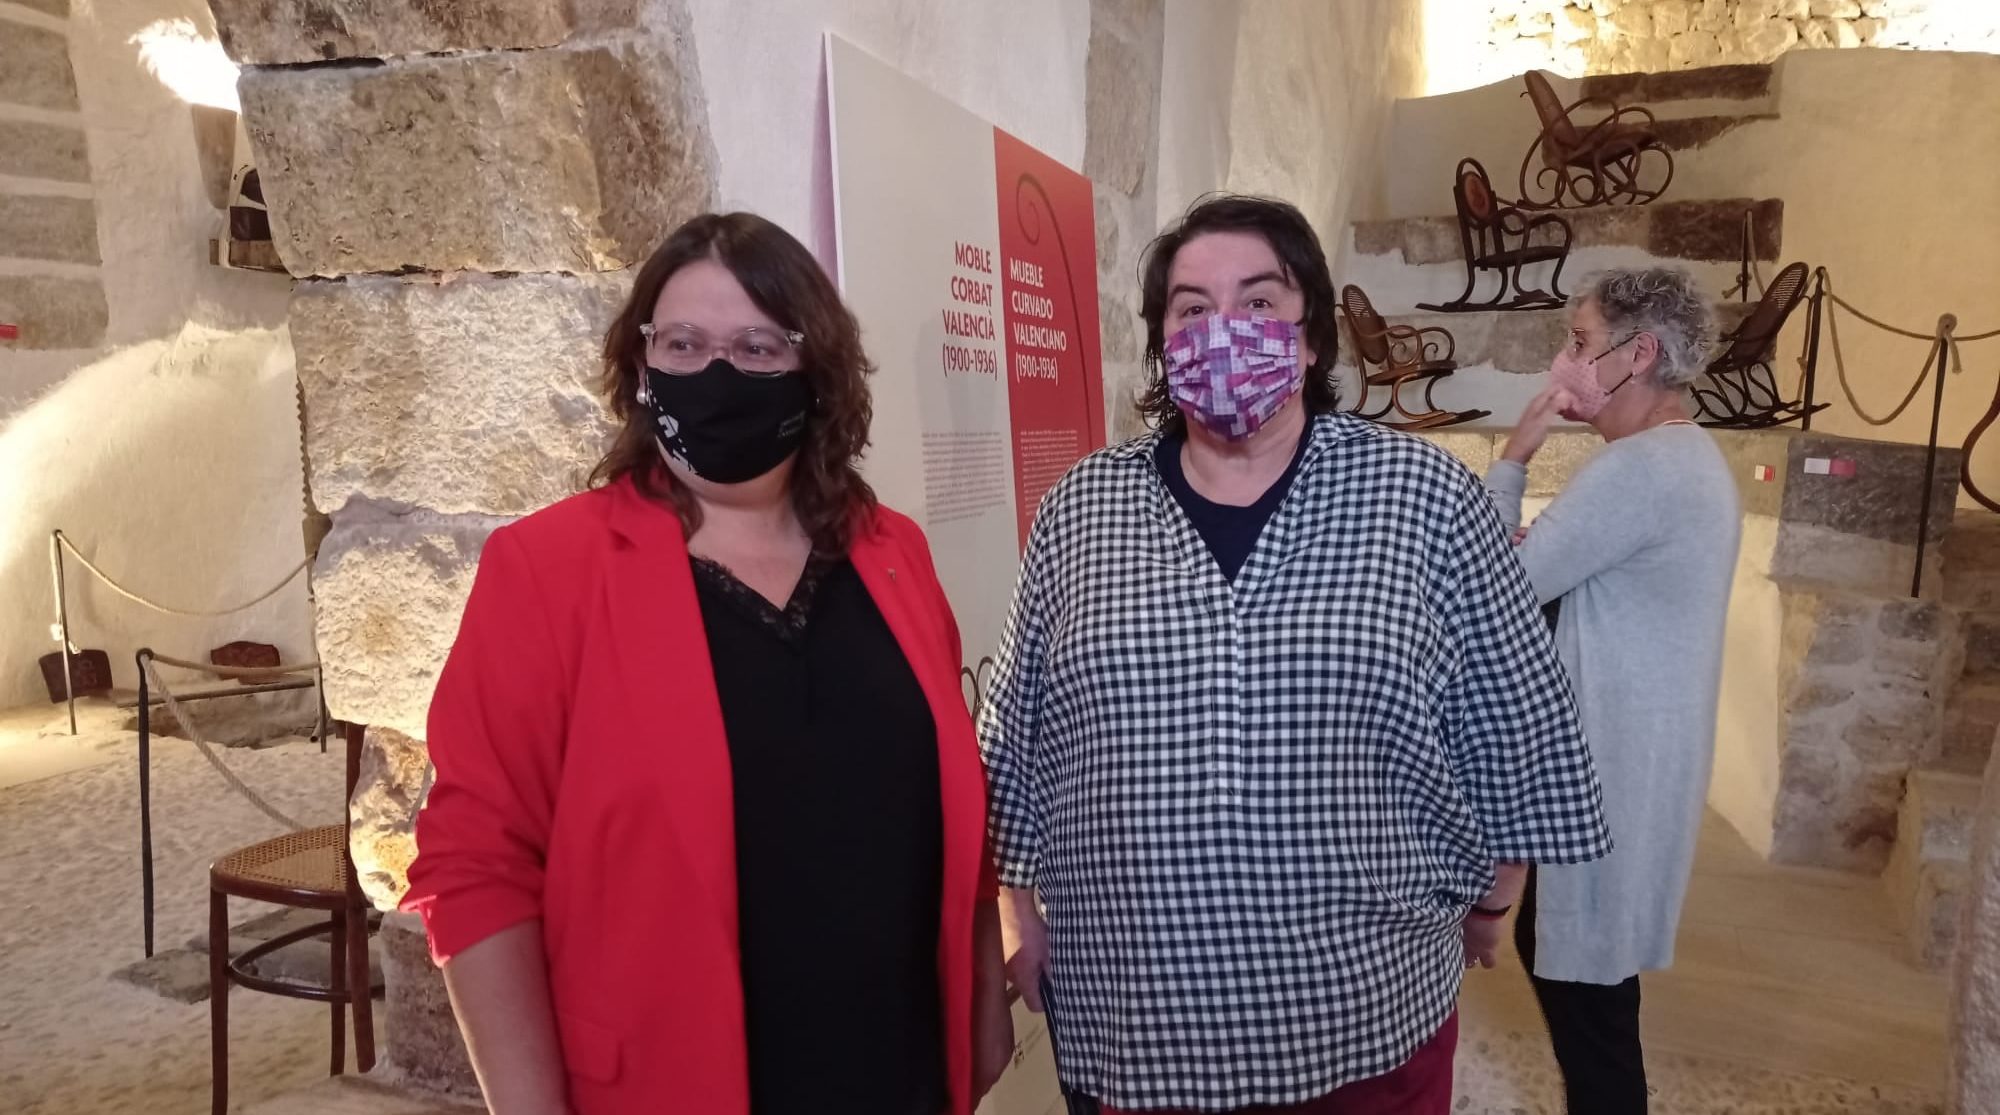 La diputada de Cultura inaugura a les Coves de Vinromà una exposició sobre 'Moble Corbat Valencià'